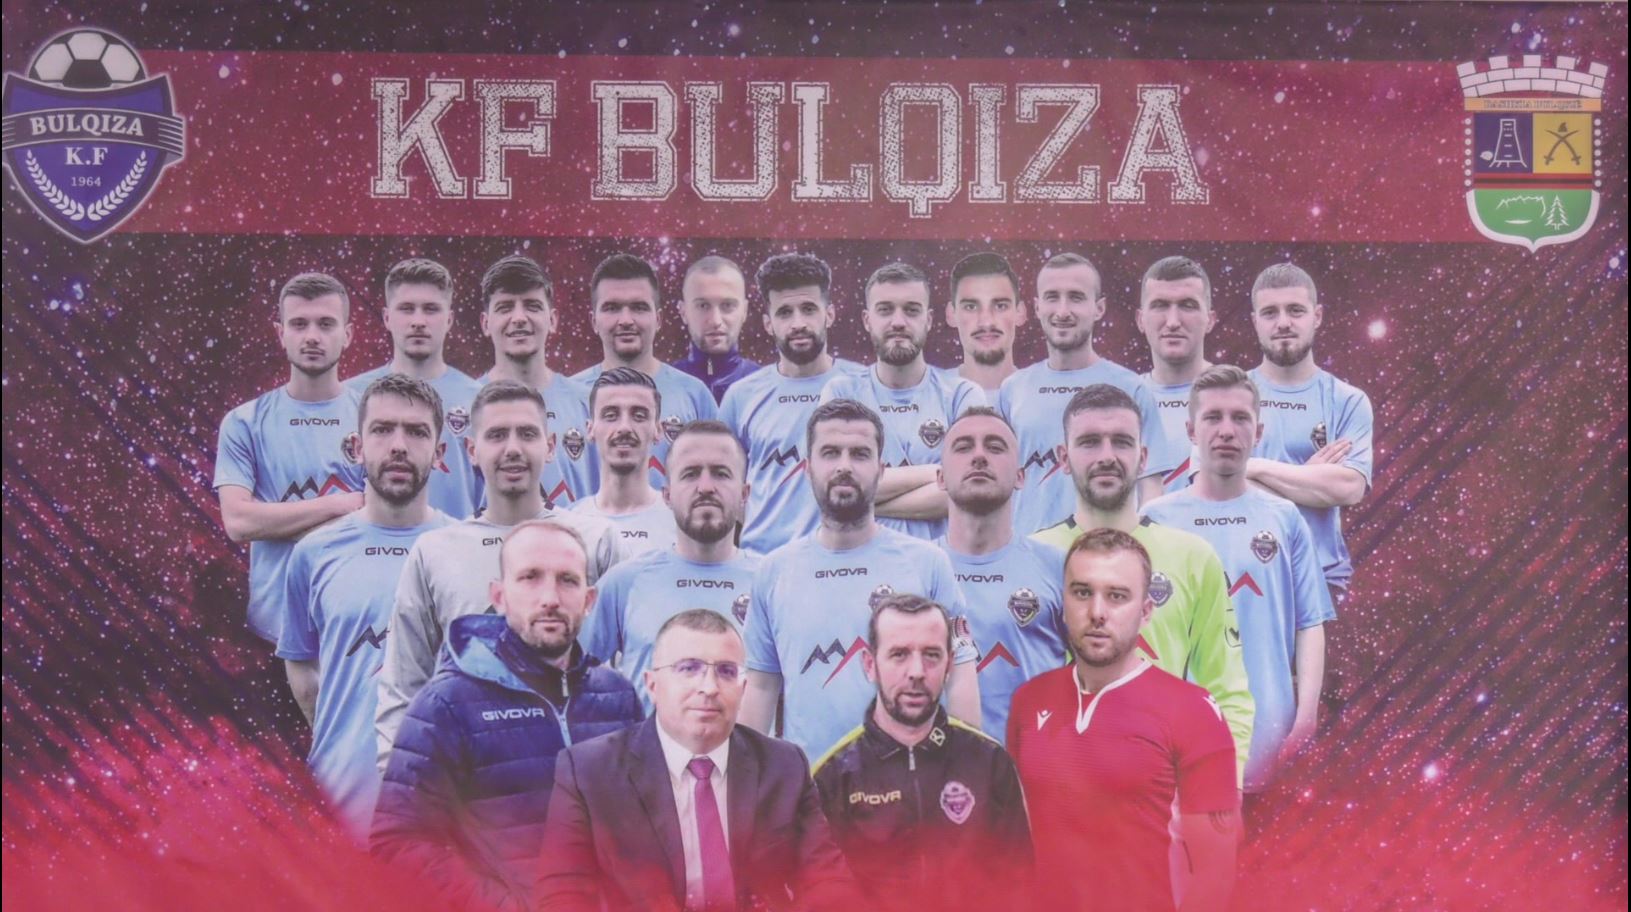 Medalja e certifikata nderi, KF Bulqiza feston me ceremoni ngjitjen në të Dytën